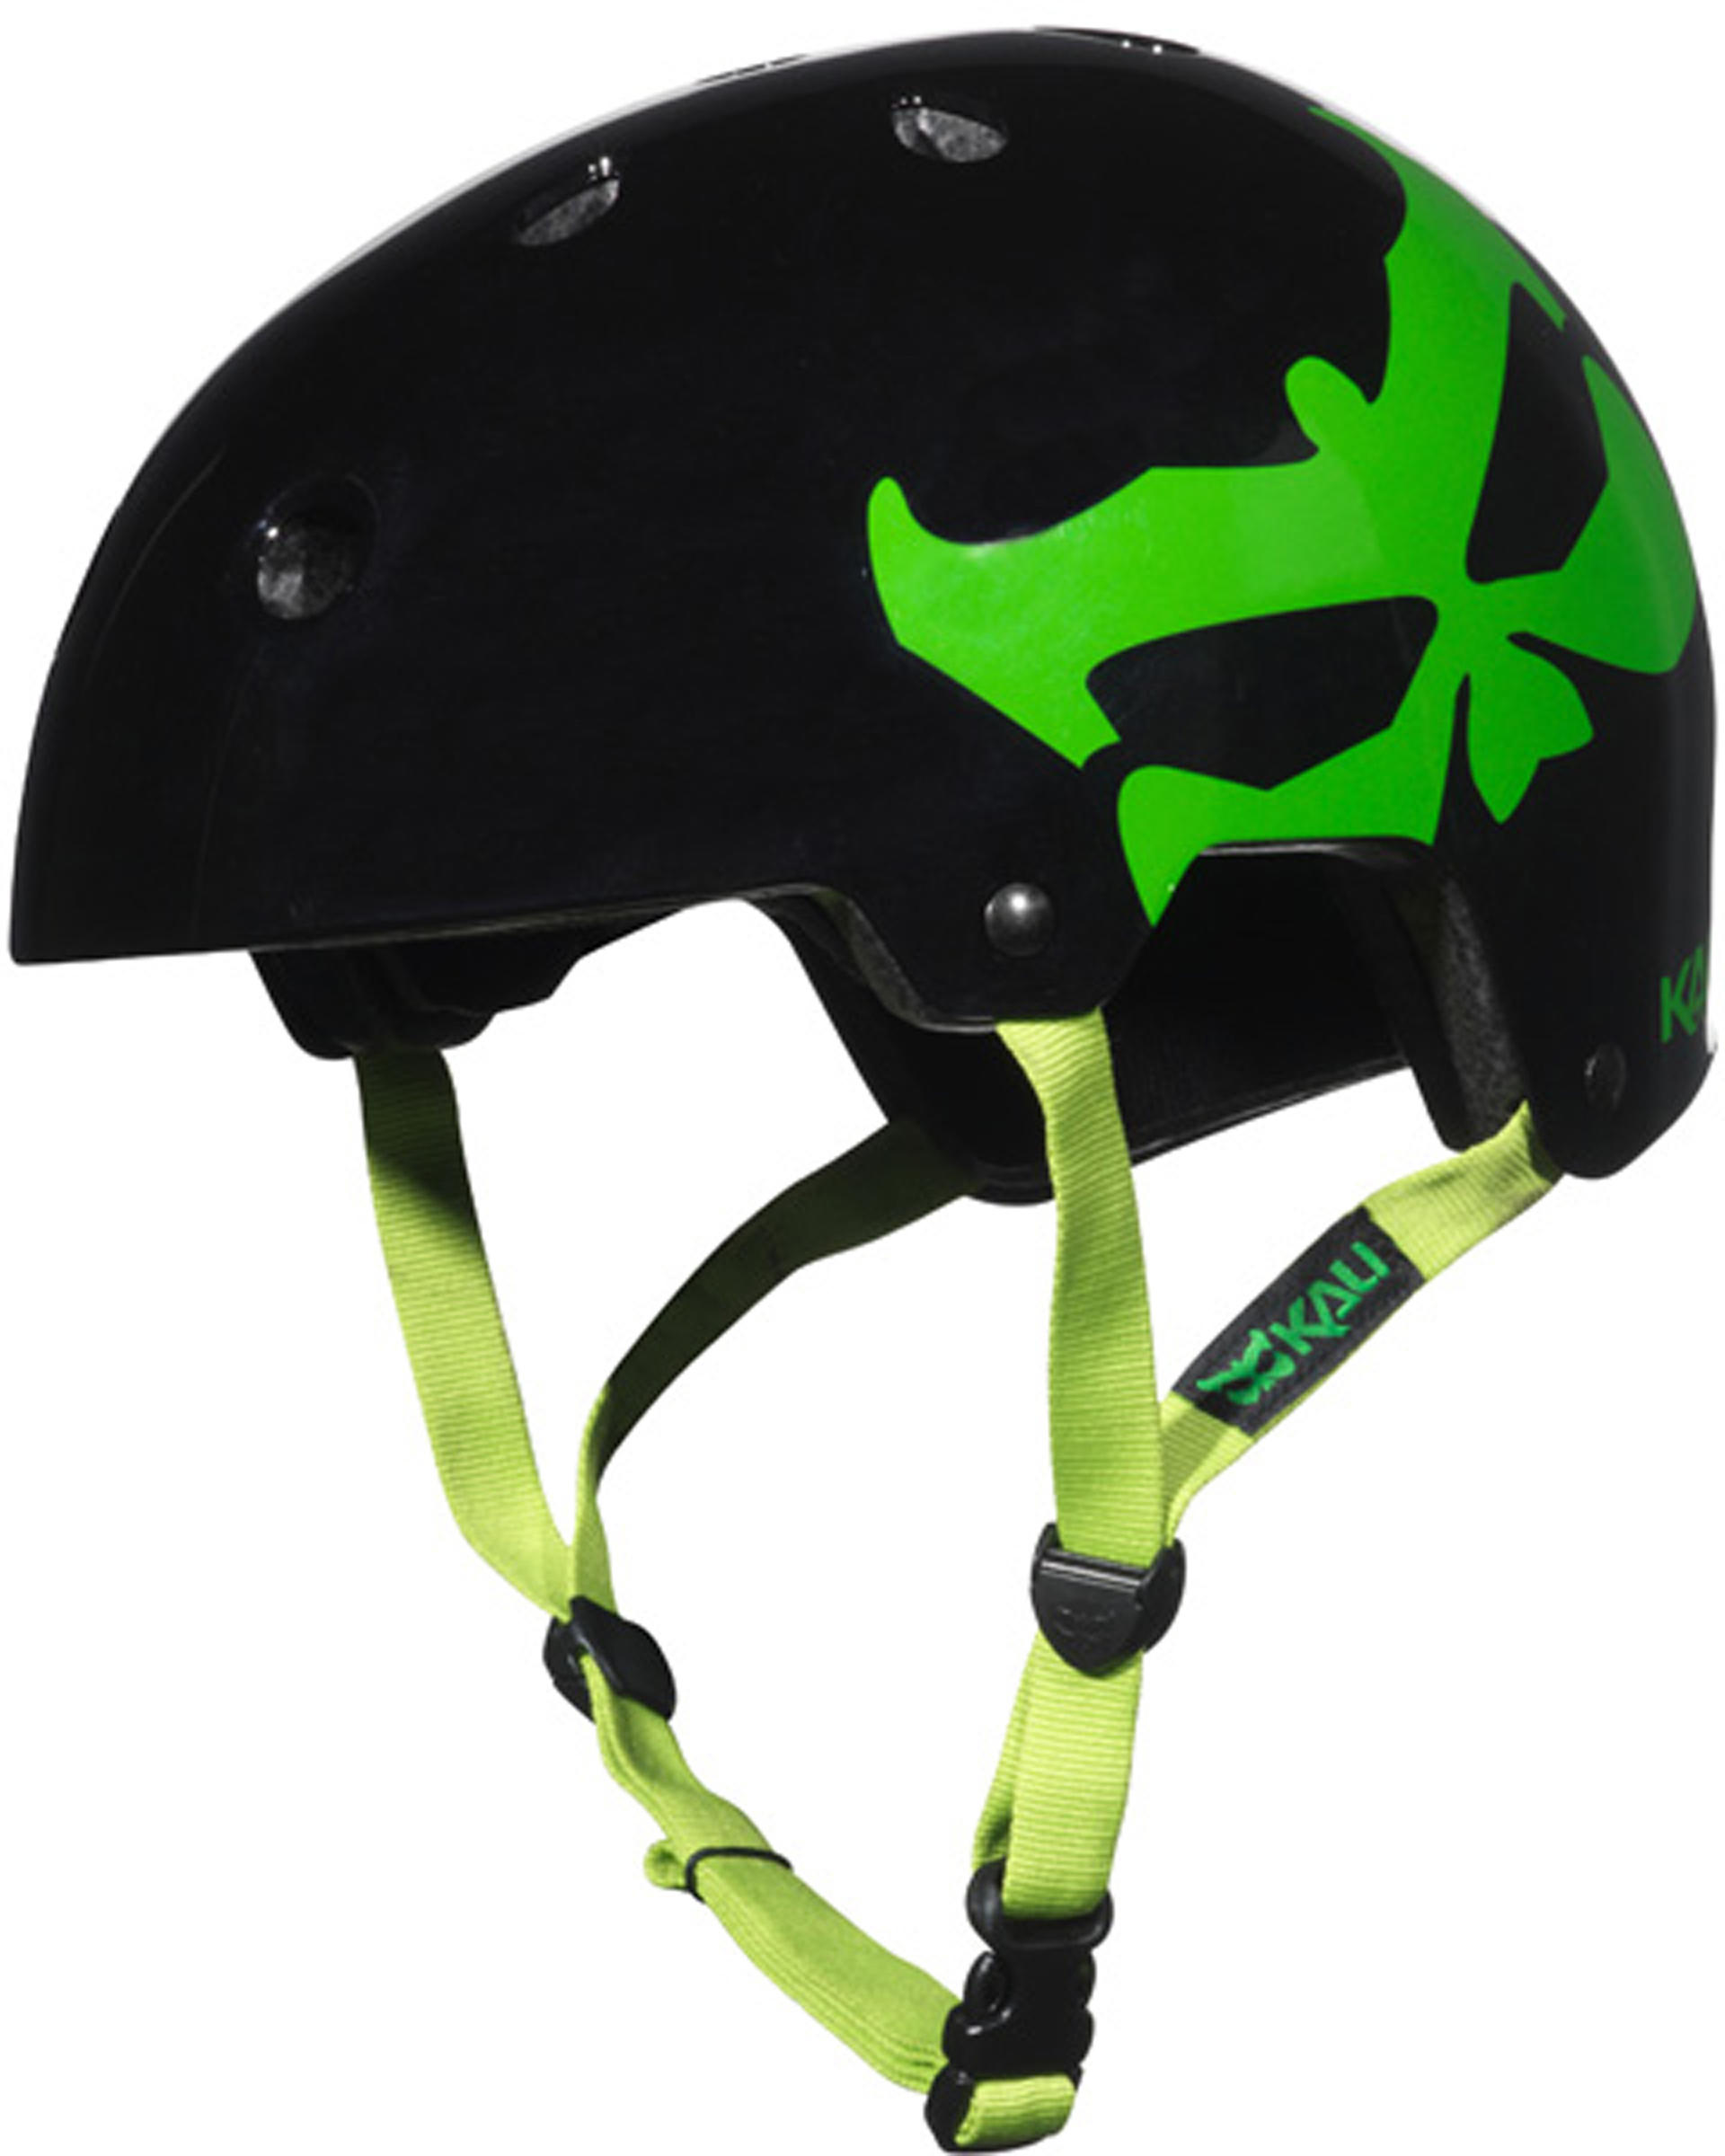 Kali Protectives Maha BMX Helmet